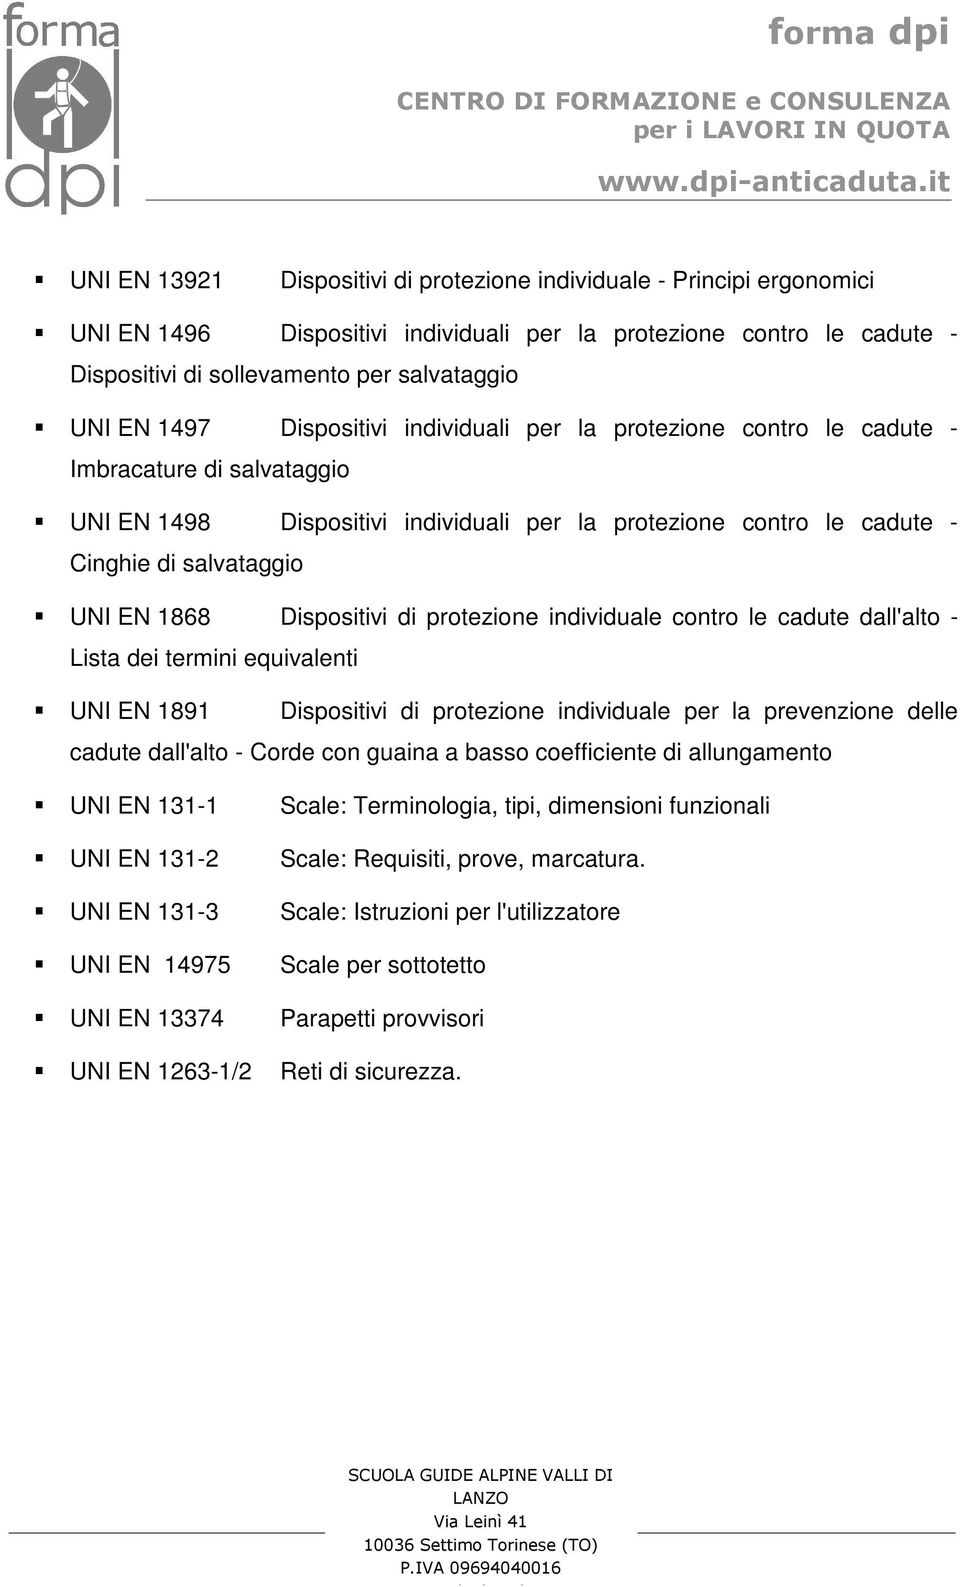 1868 Dispositivi di protezione individuale contro le cadute dall'alto - Lista dei termini equivalenti UNI EN 1891 Dispositivi di protezione individuale per la prevenzione delle cadute dall'alto -